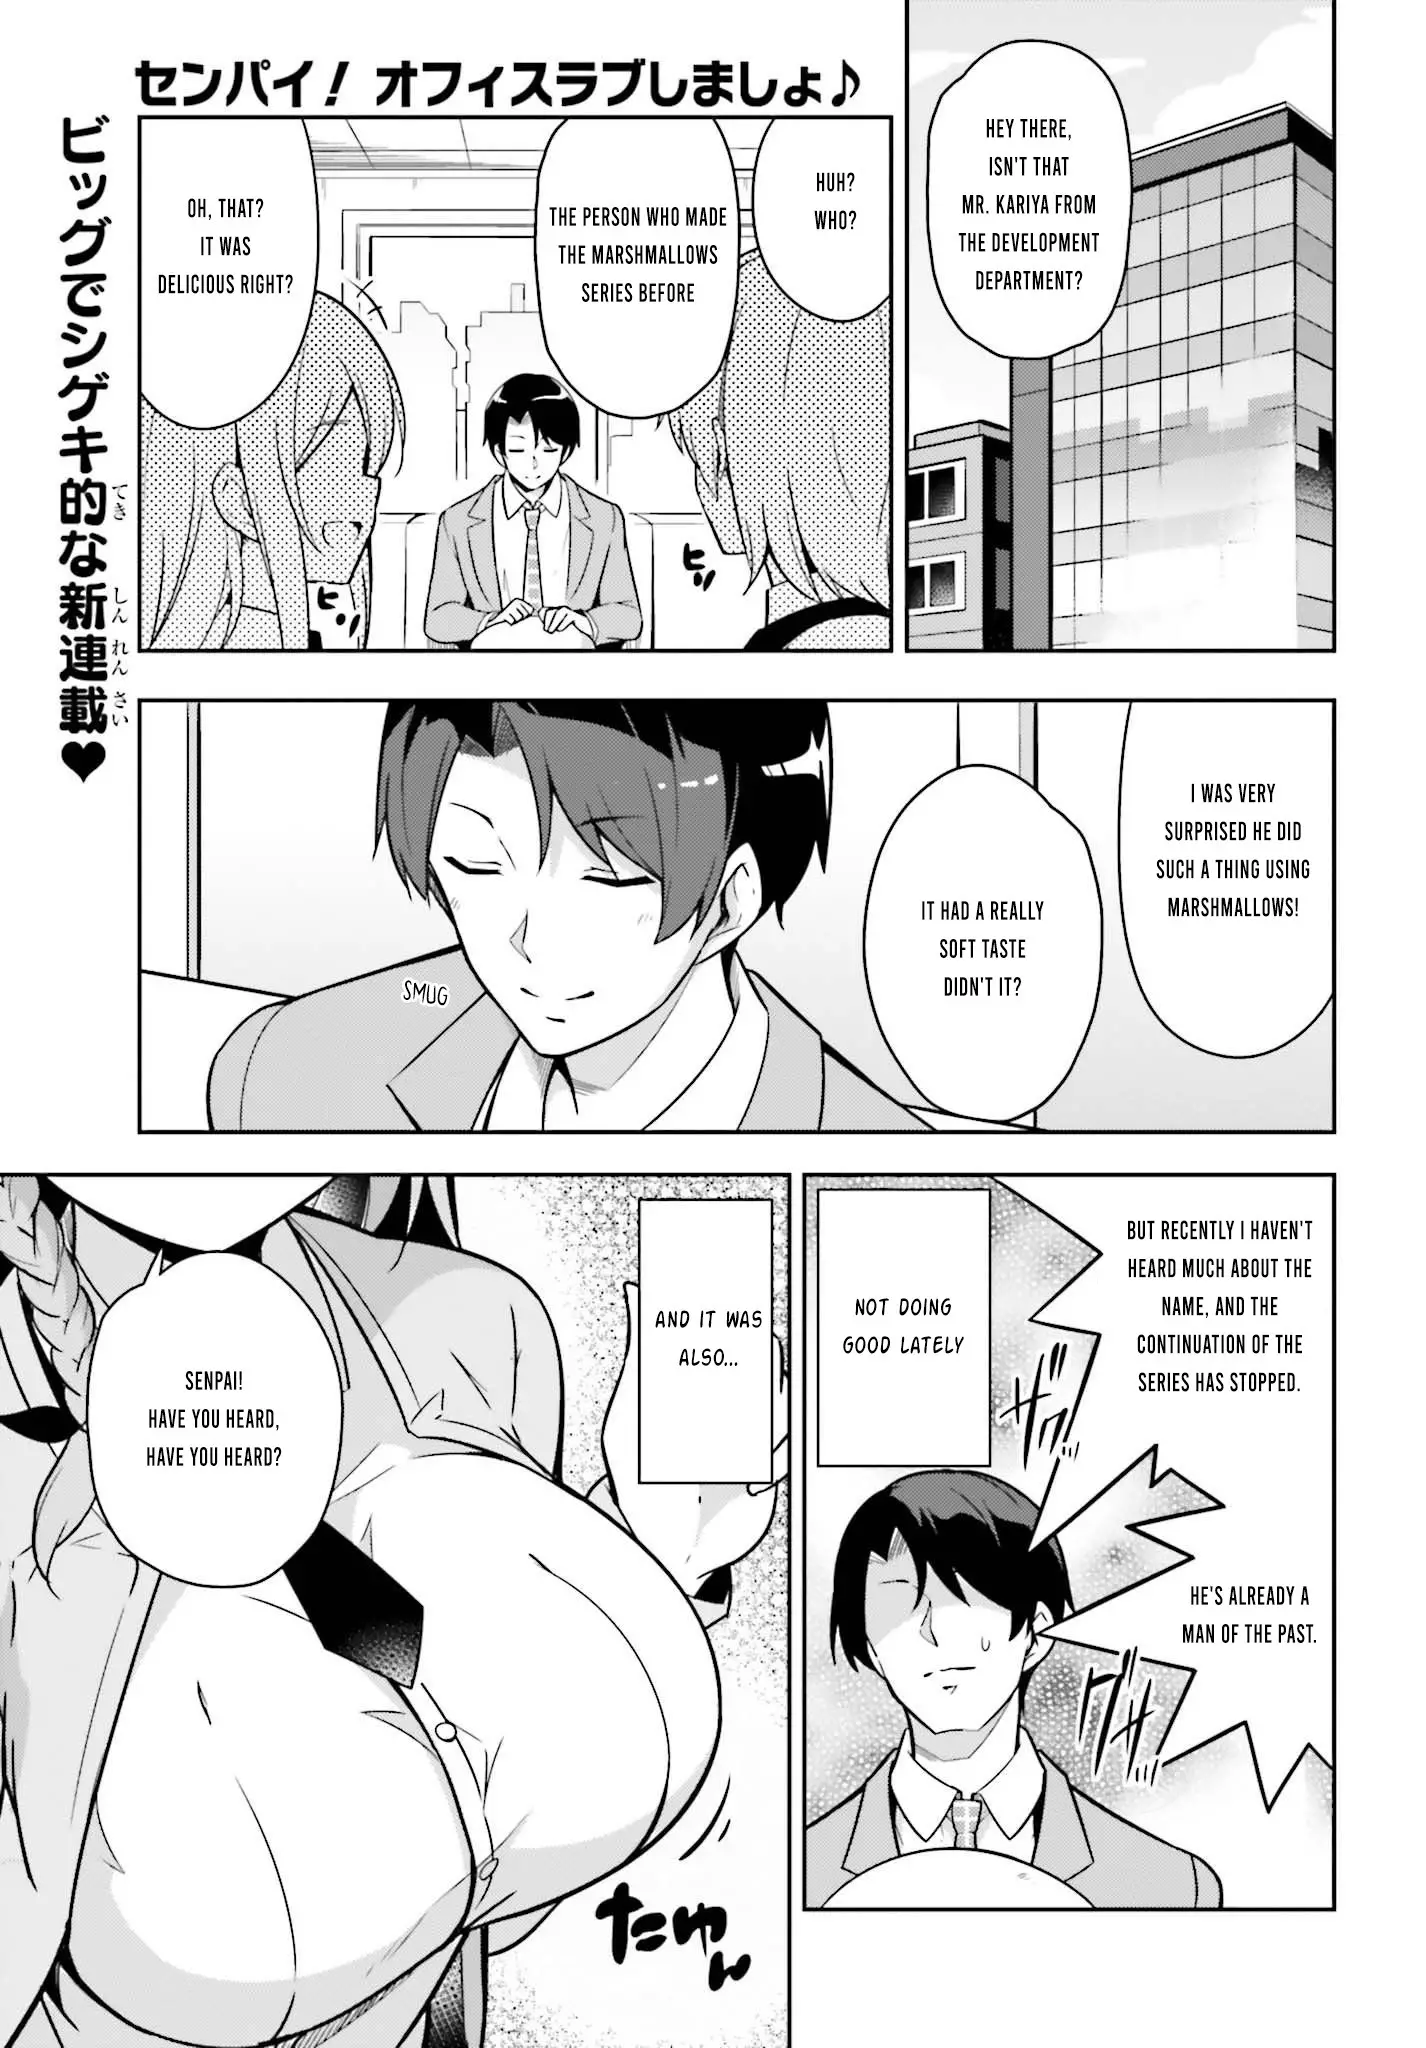 Senpai! Let's Have An Office Romance ♪ - 1 page 2